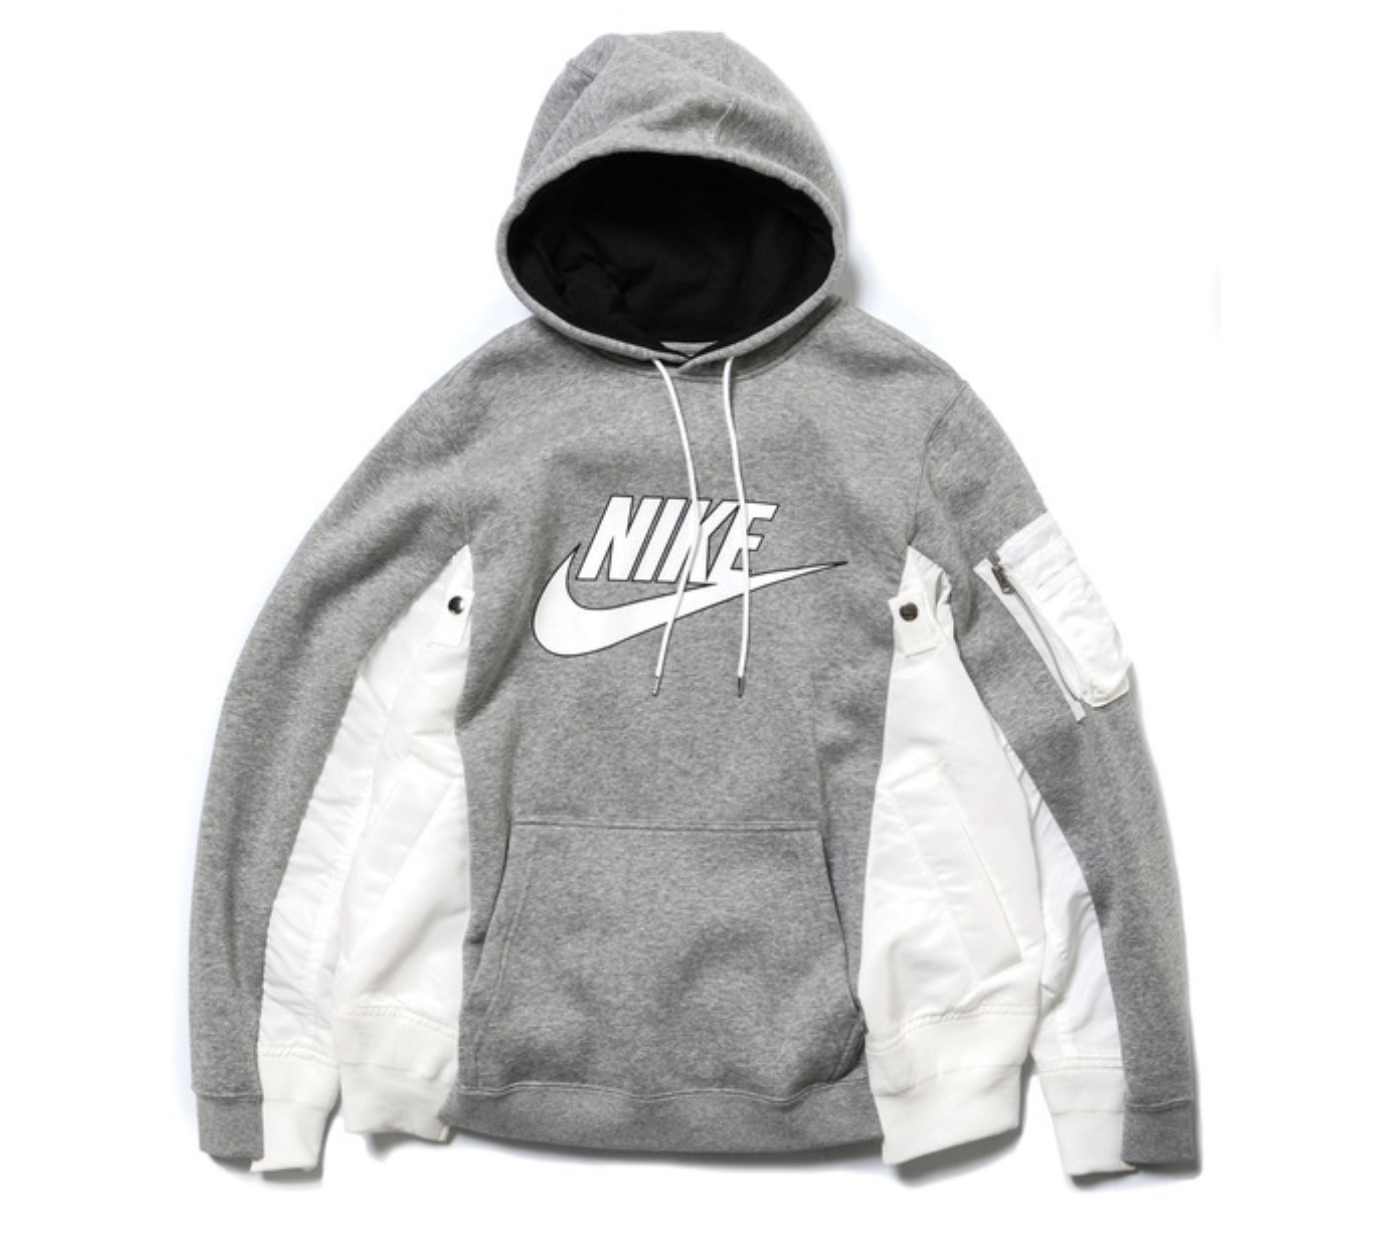 Sacai x Nike hoodie